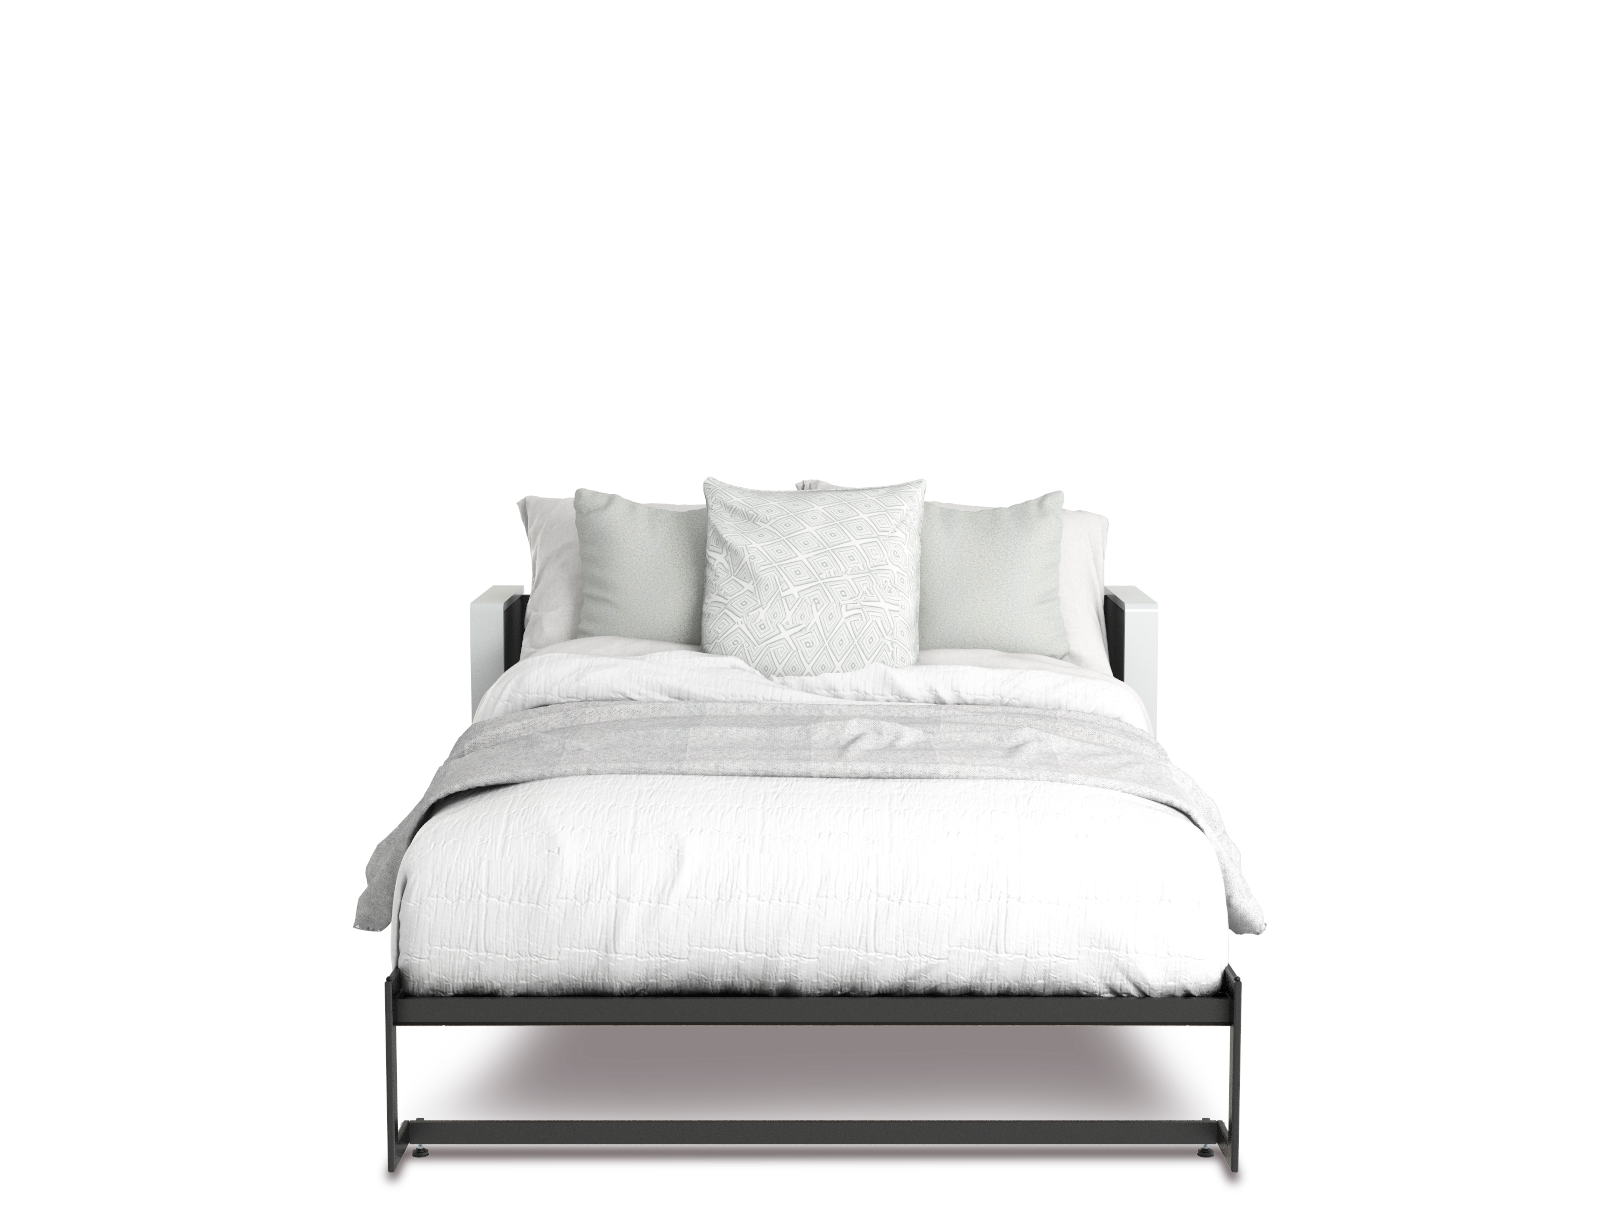 Esentelle base de cama queen size con laminado de madera color fresno // MS